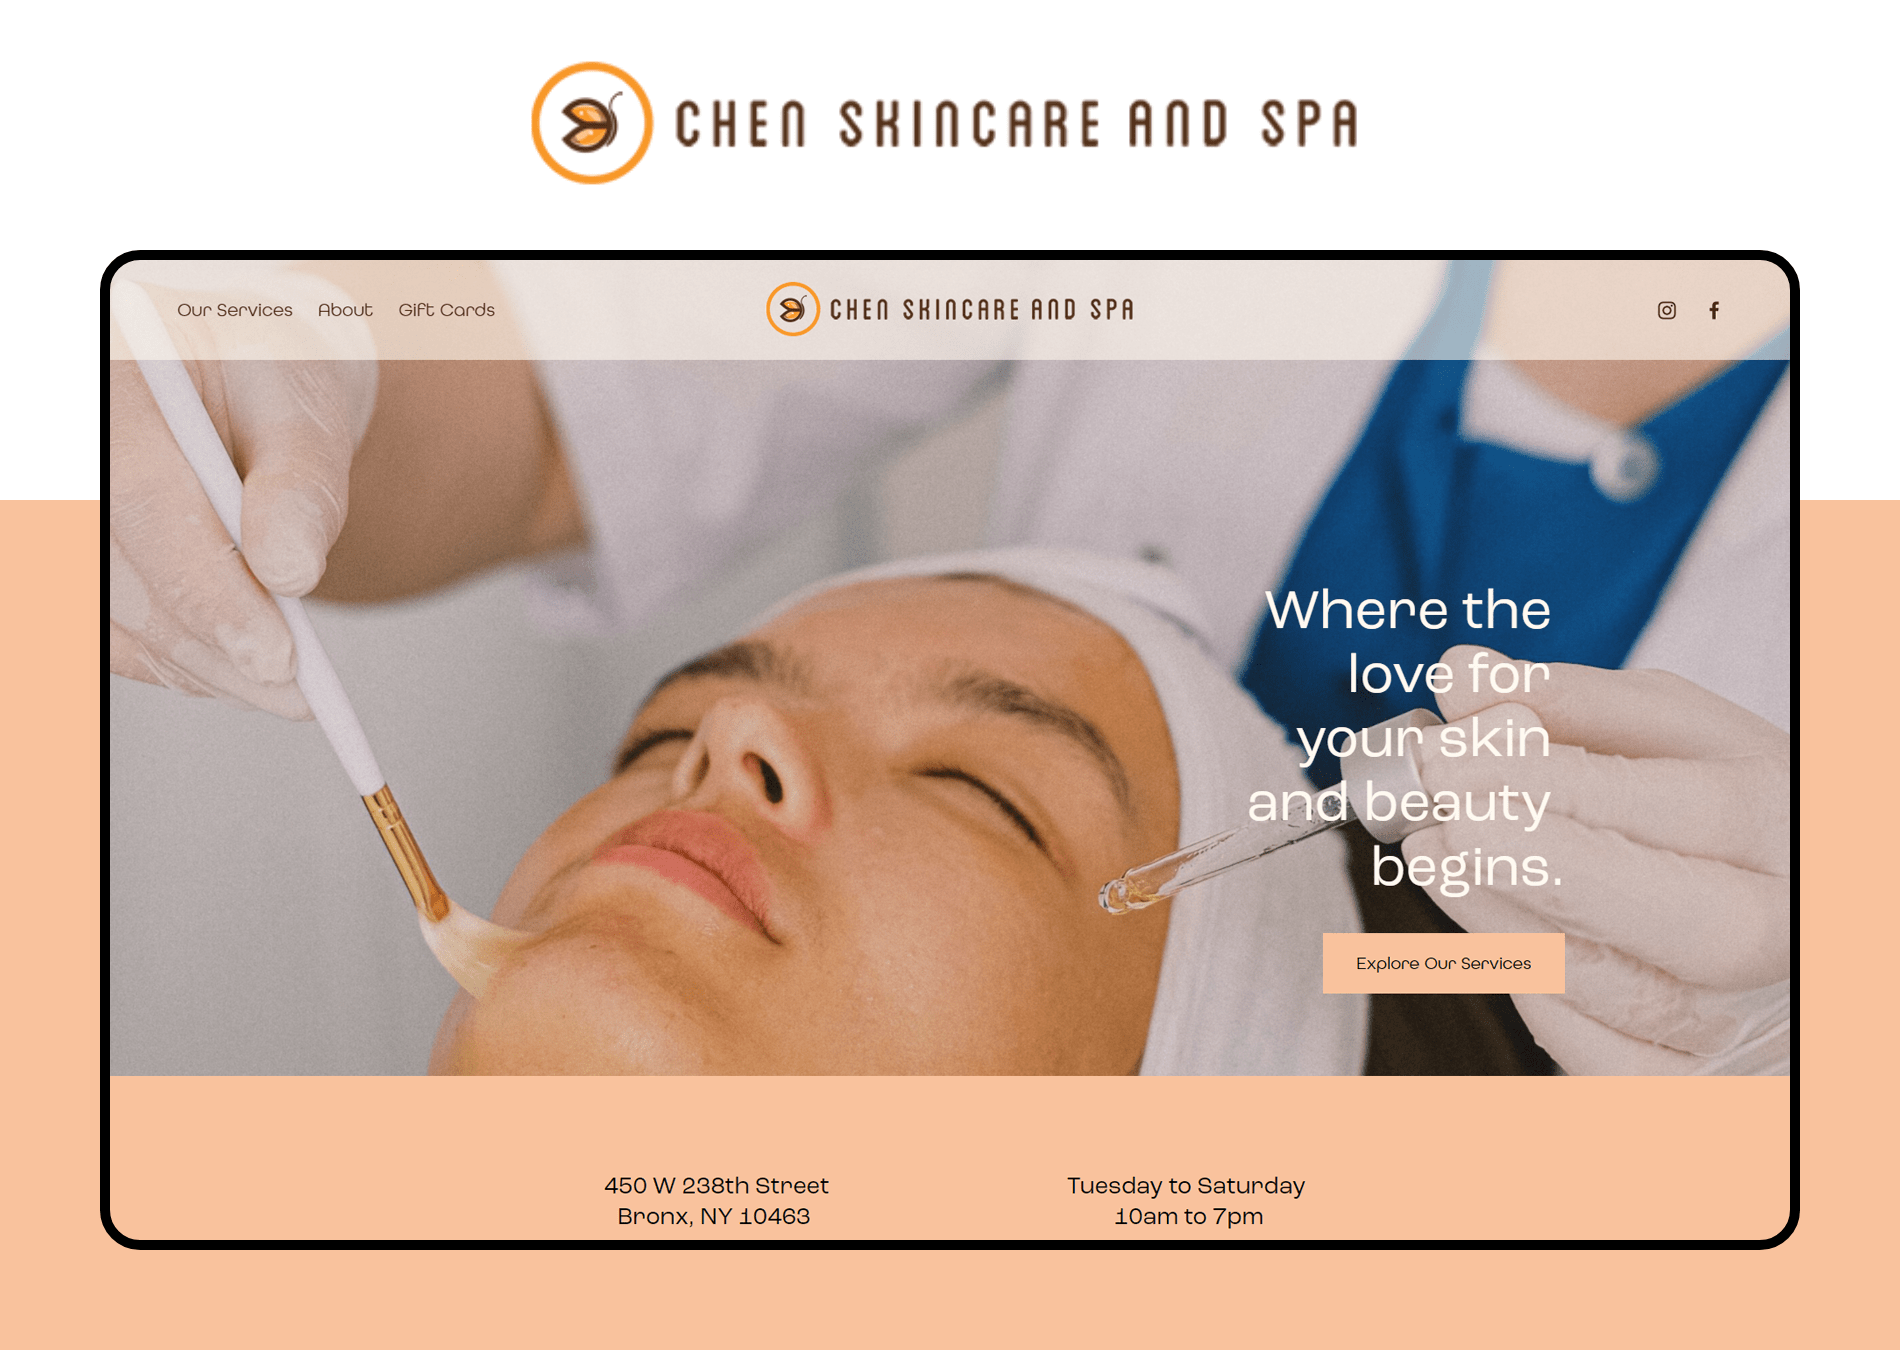 Chen Skin Care